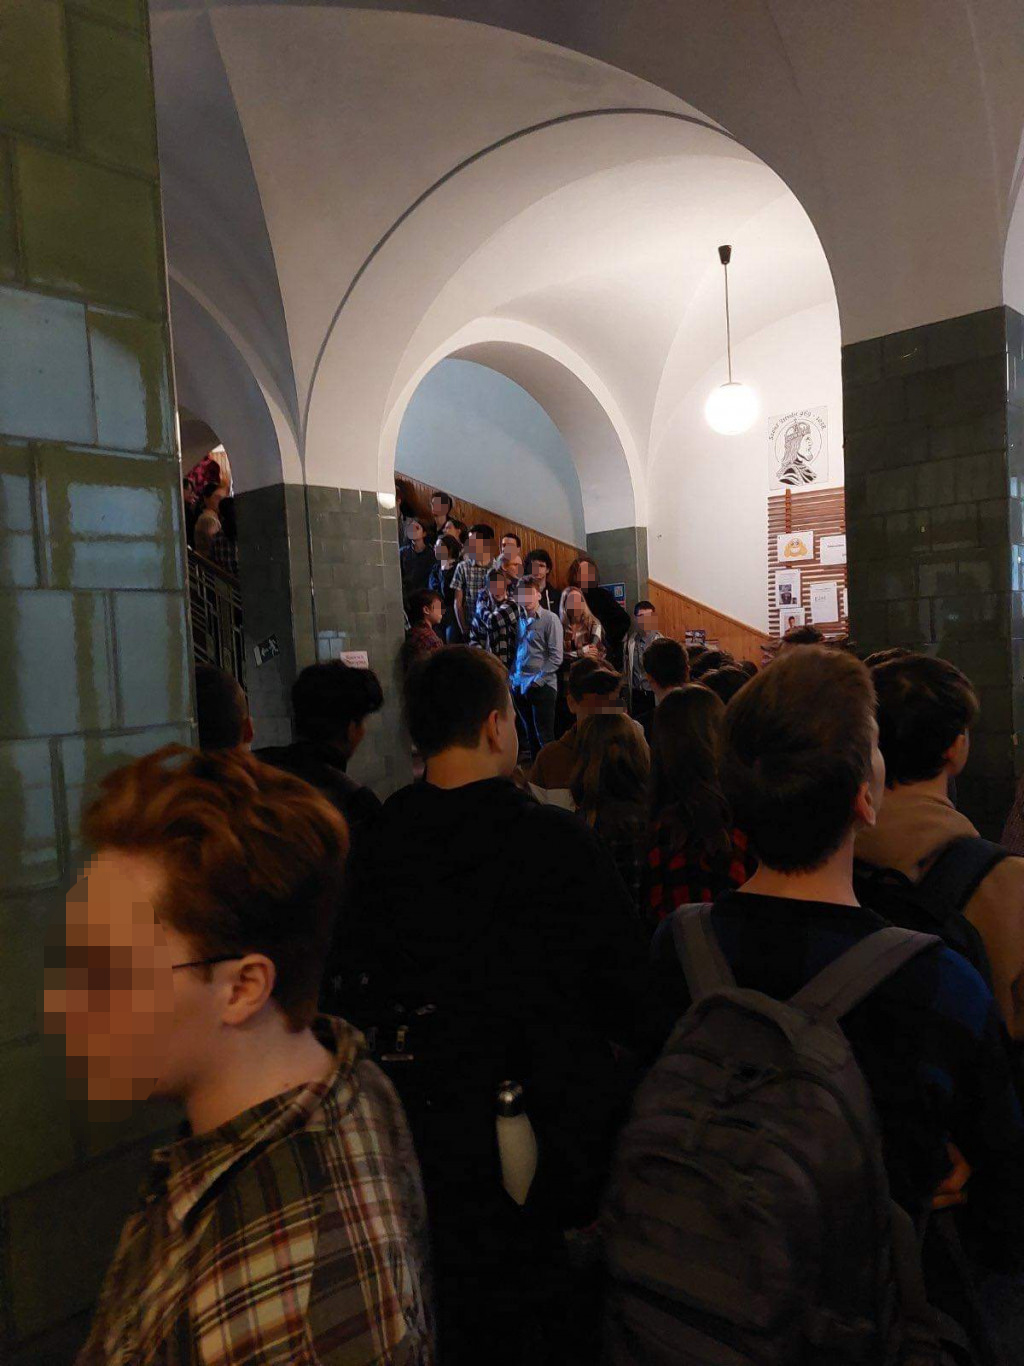 Tiltakozó diákok állják el a Szent István Gimnázium folyosóját, hogy megakadályozzák a tankerületet három tiltakozó tanár kirúgásában